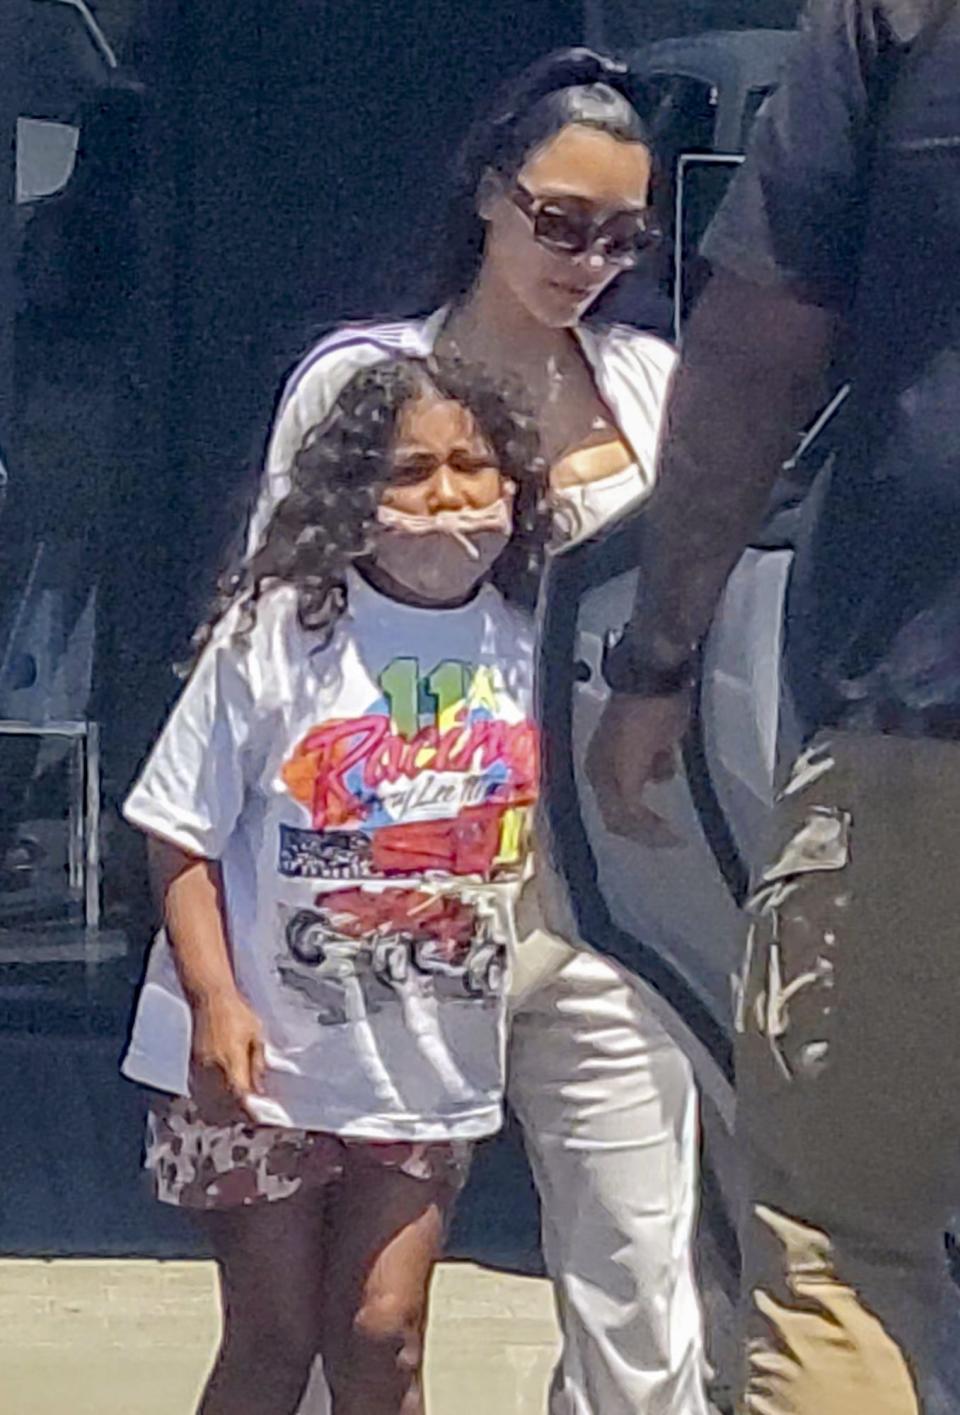 <p>La estrella de telerrealidad<strong> Kim Kardashian</strong> fotografiada saliendo de un restaurante en Los Ángeles junto a su hija <strong>North West</strong>.</p>